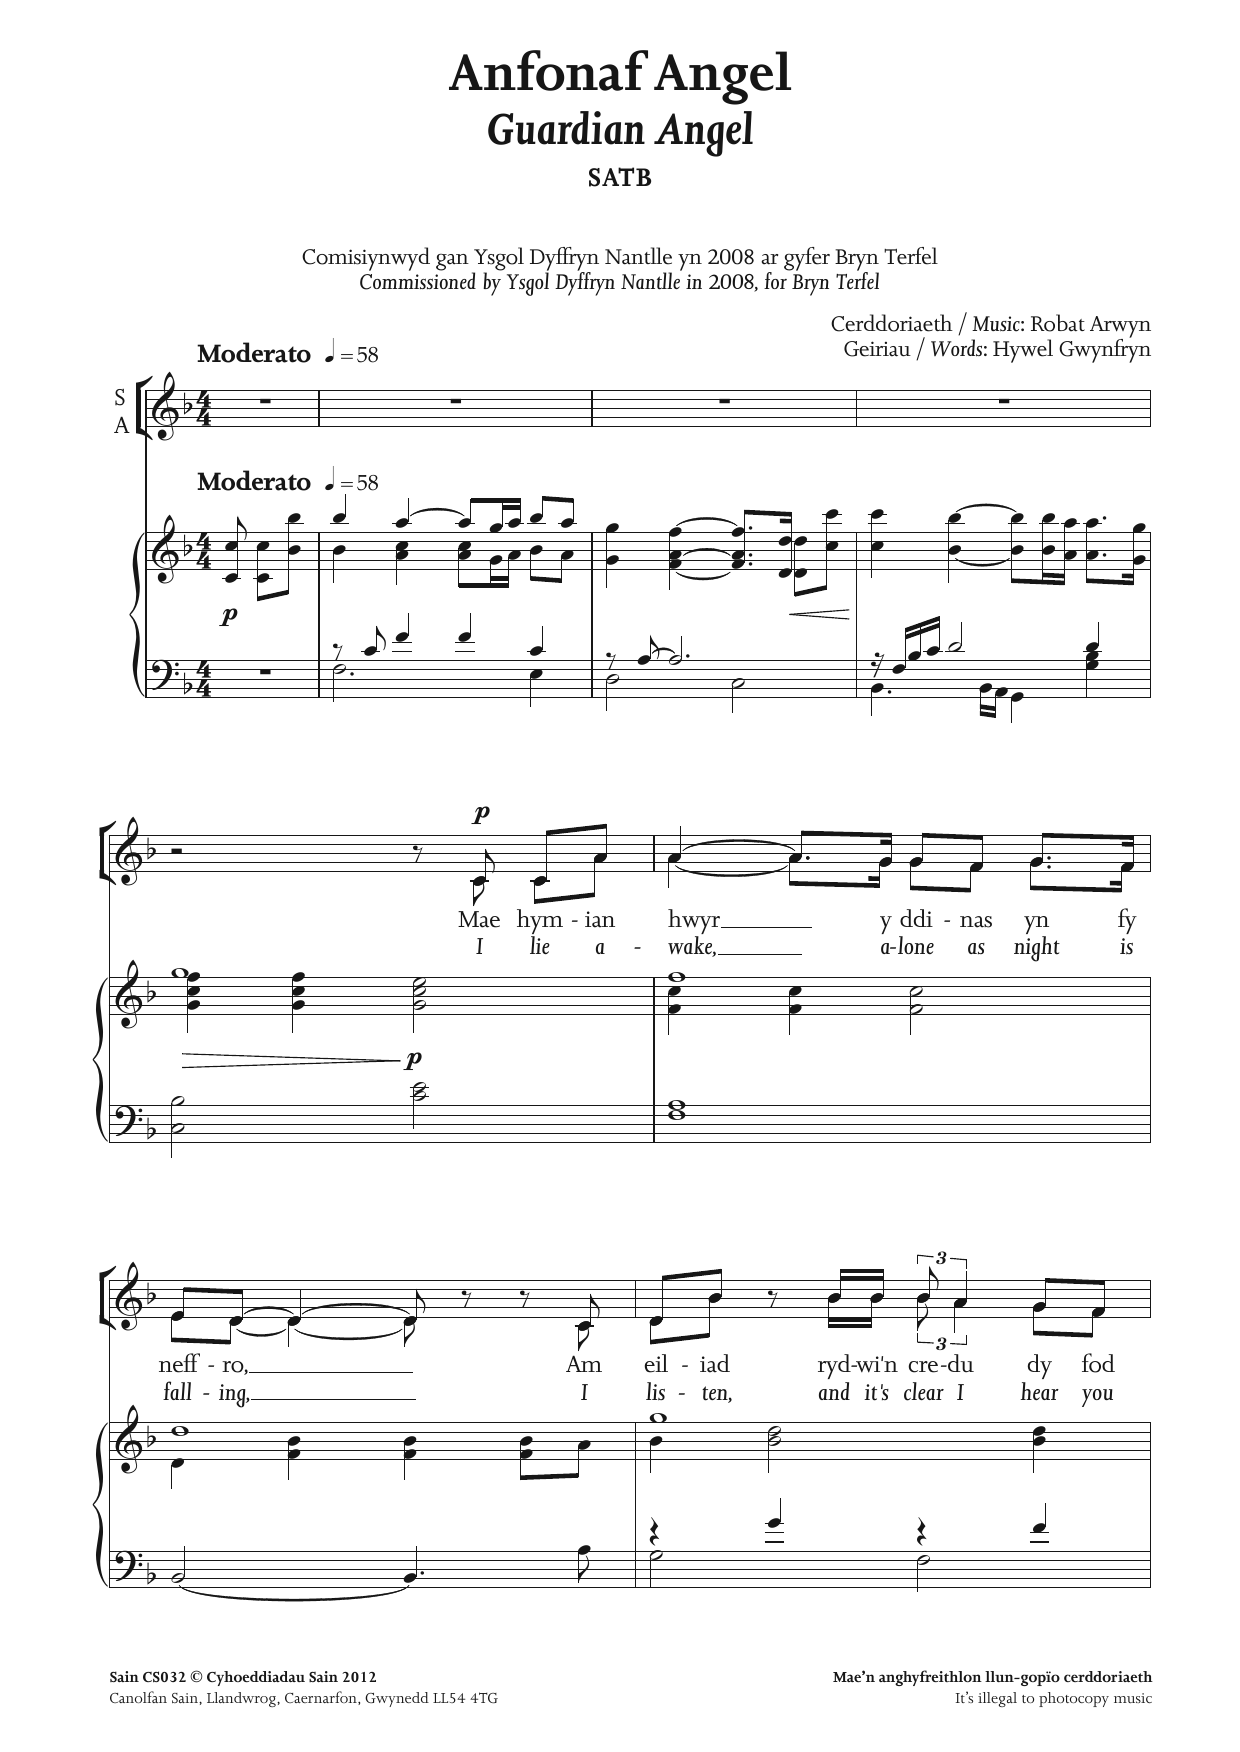 Robat Arwyn Anfonaf Angel (Guardian Angel) sheet music notes and chords arranged for TTBB Choir